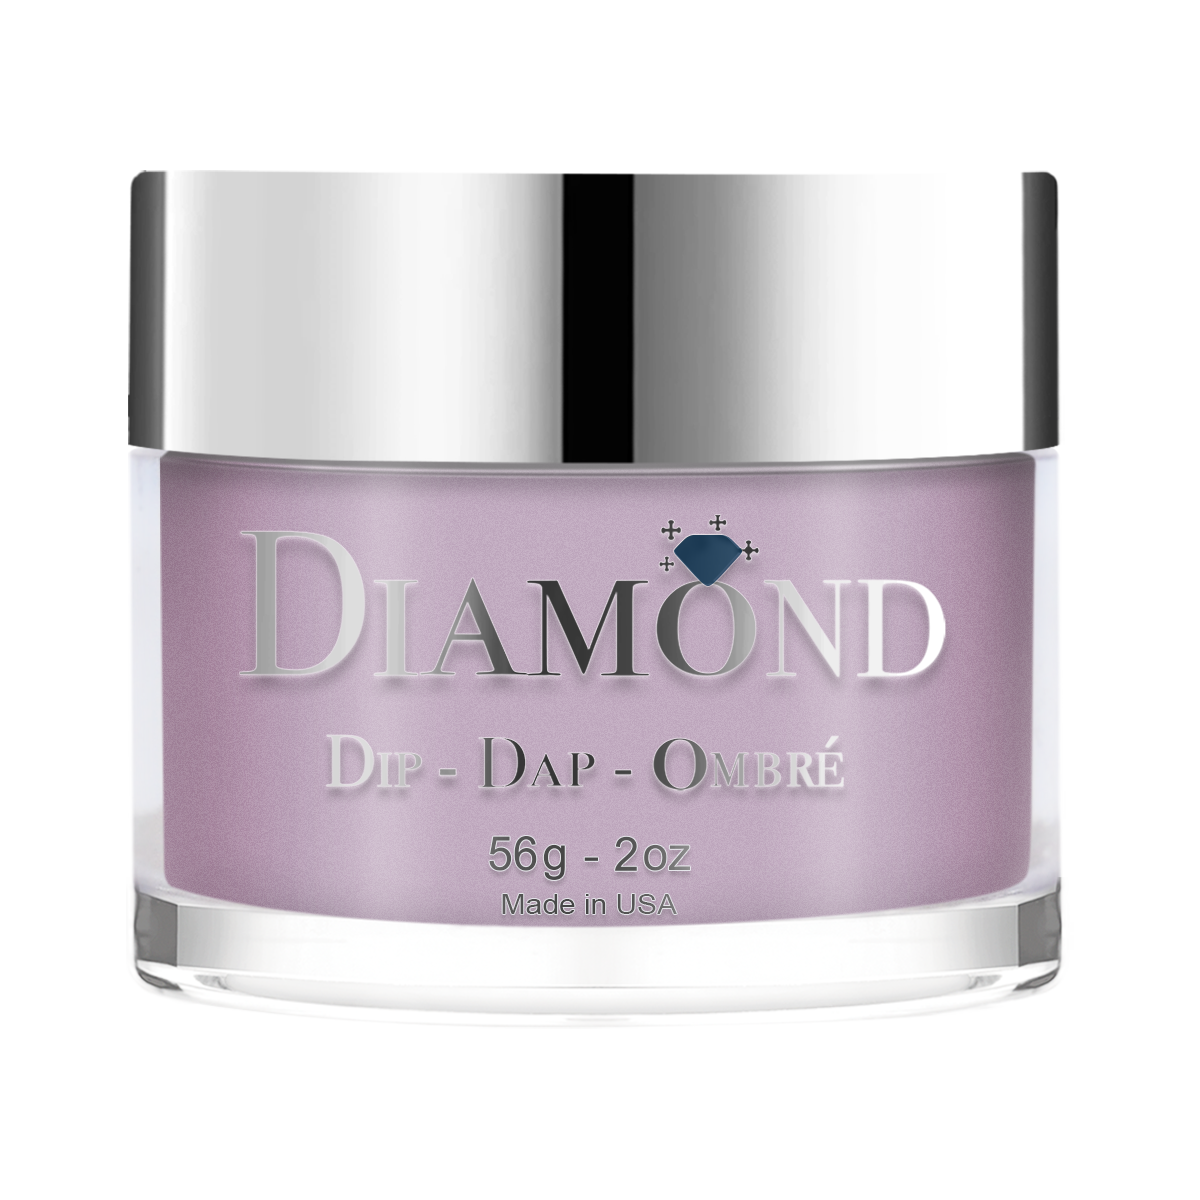 Diamond Dip & Dap Ombre Powder - 016